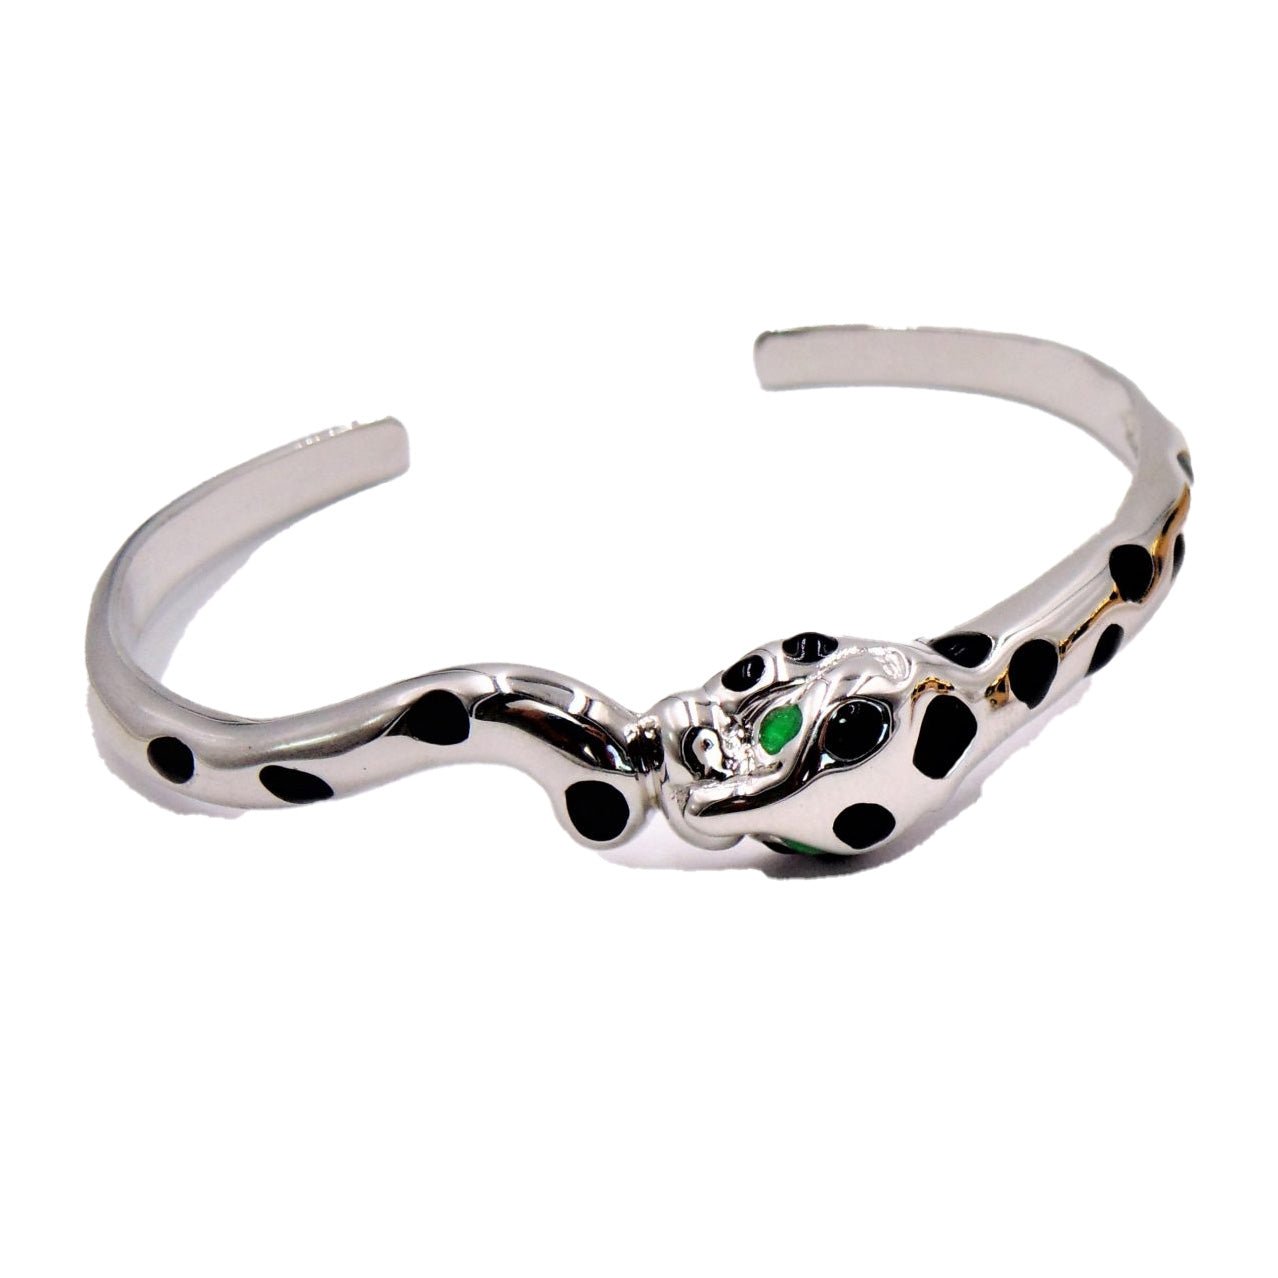 Jaguar Cuff Bracelet - EVAMAIA